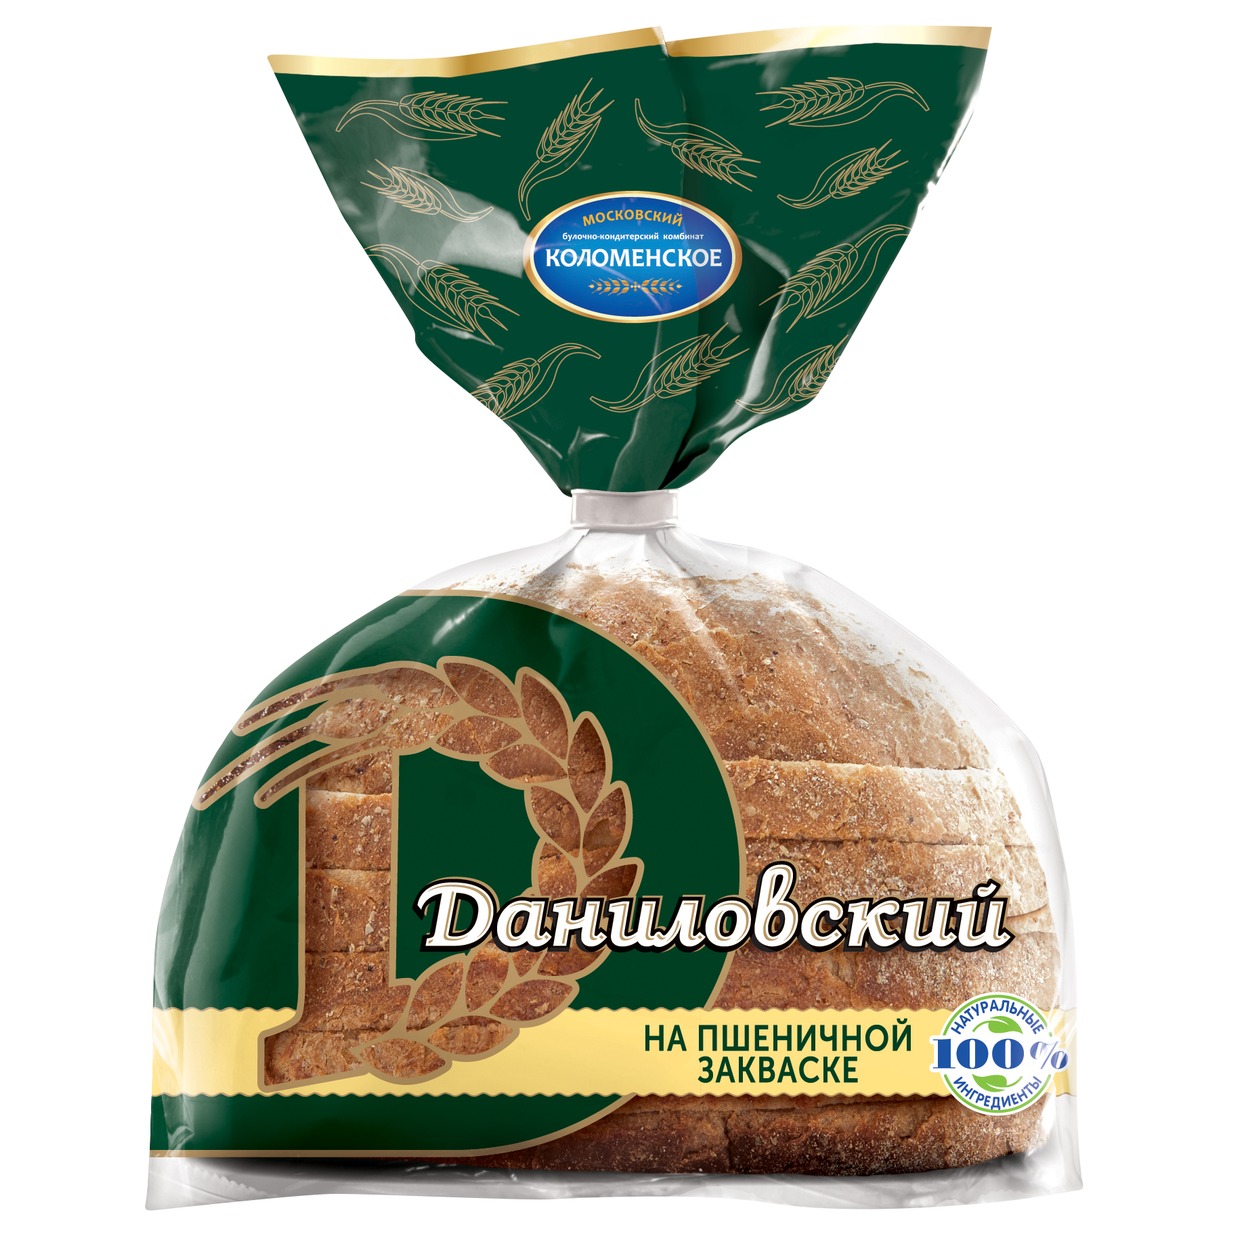 Хлеб Даниловский, Коломенское, 275 г